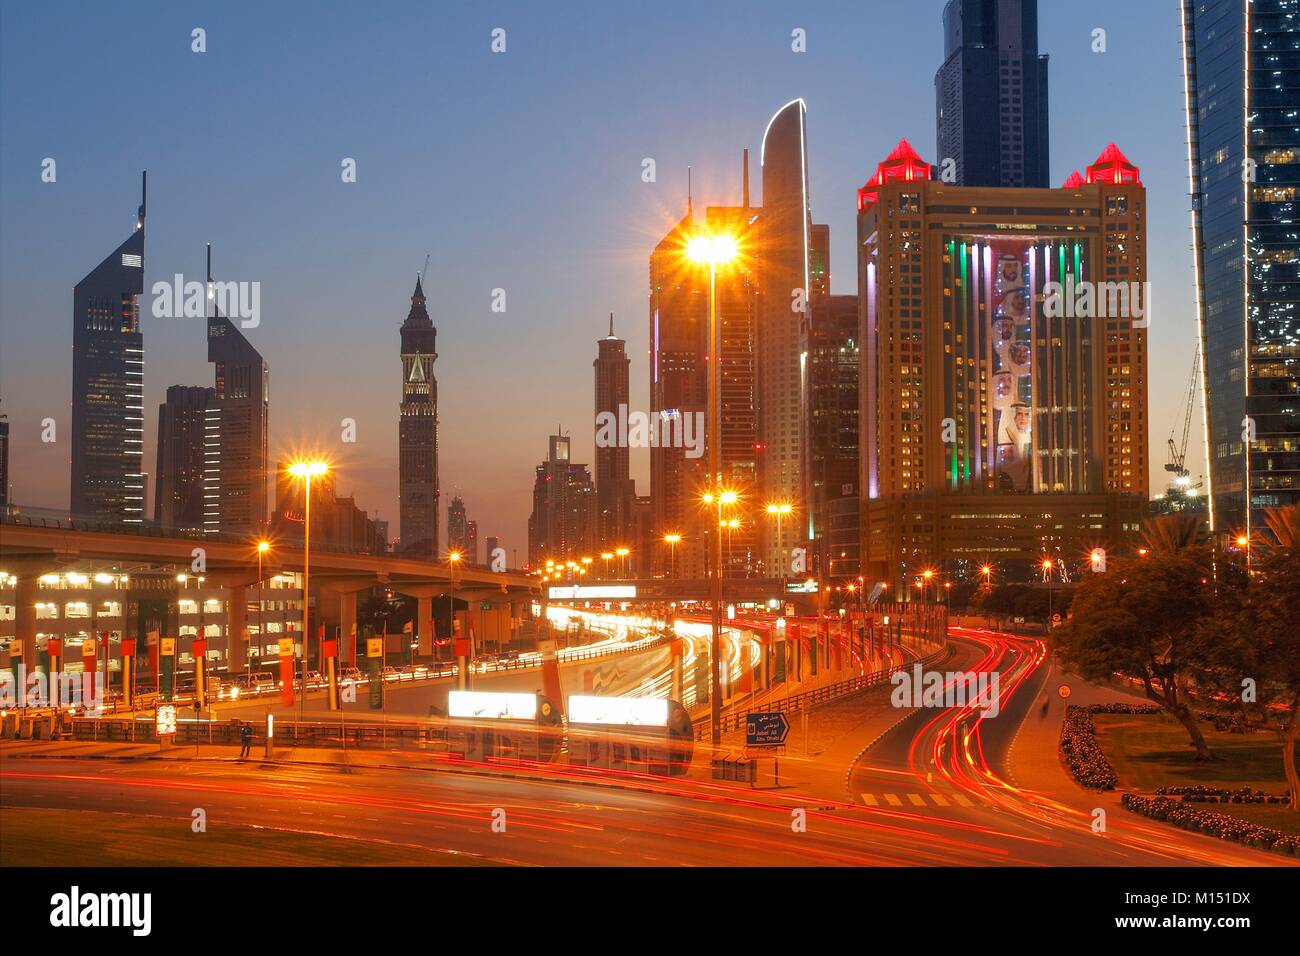 Emirats Arabes Unis, Dubai, les tours de Sheikh Zayed Road Banque D'Images